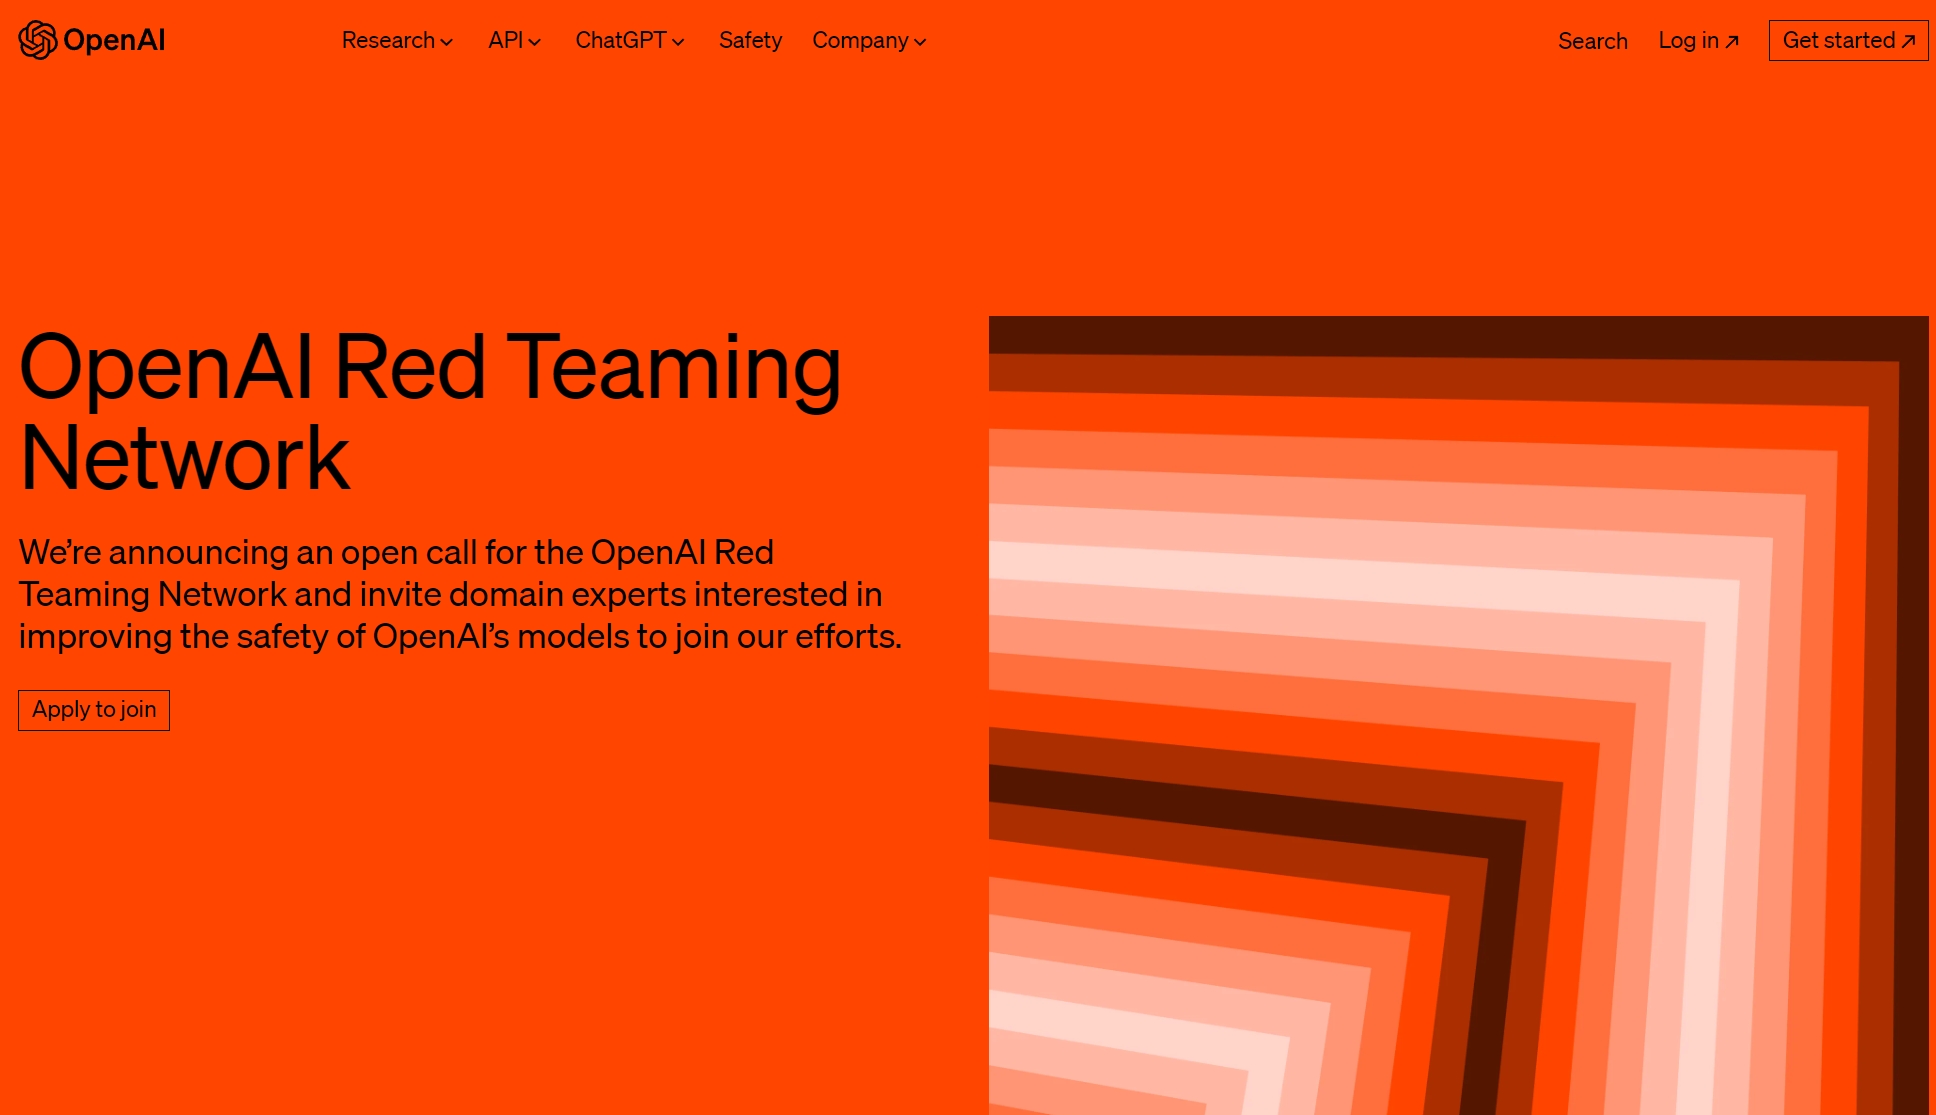 OpenAI宣布公开招募“红队”网络，面向AI的超级专家库呼之欲出